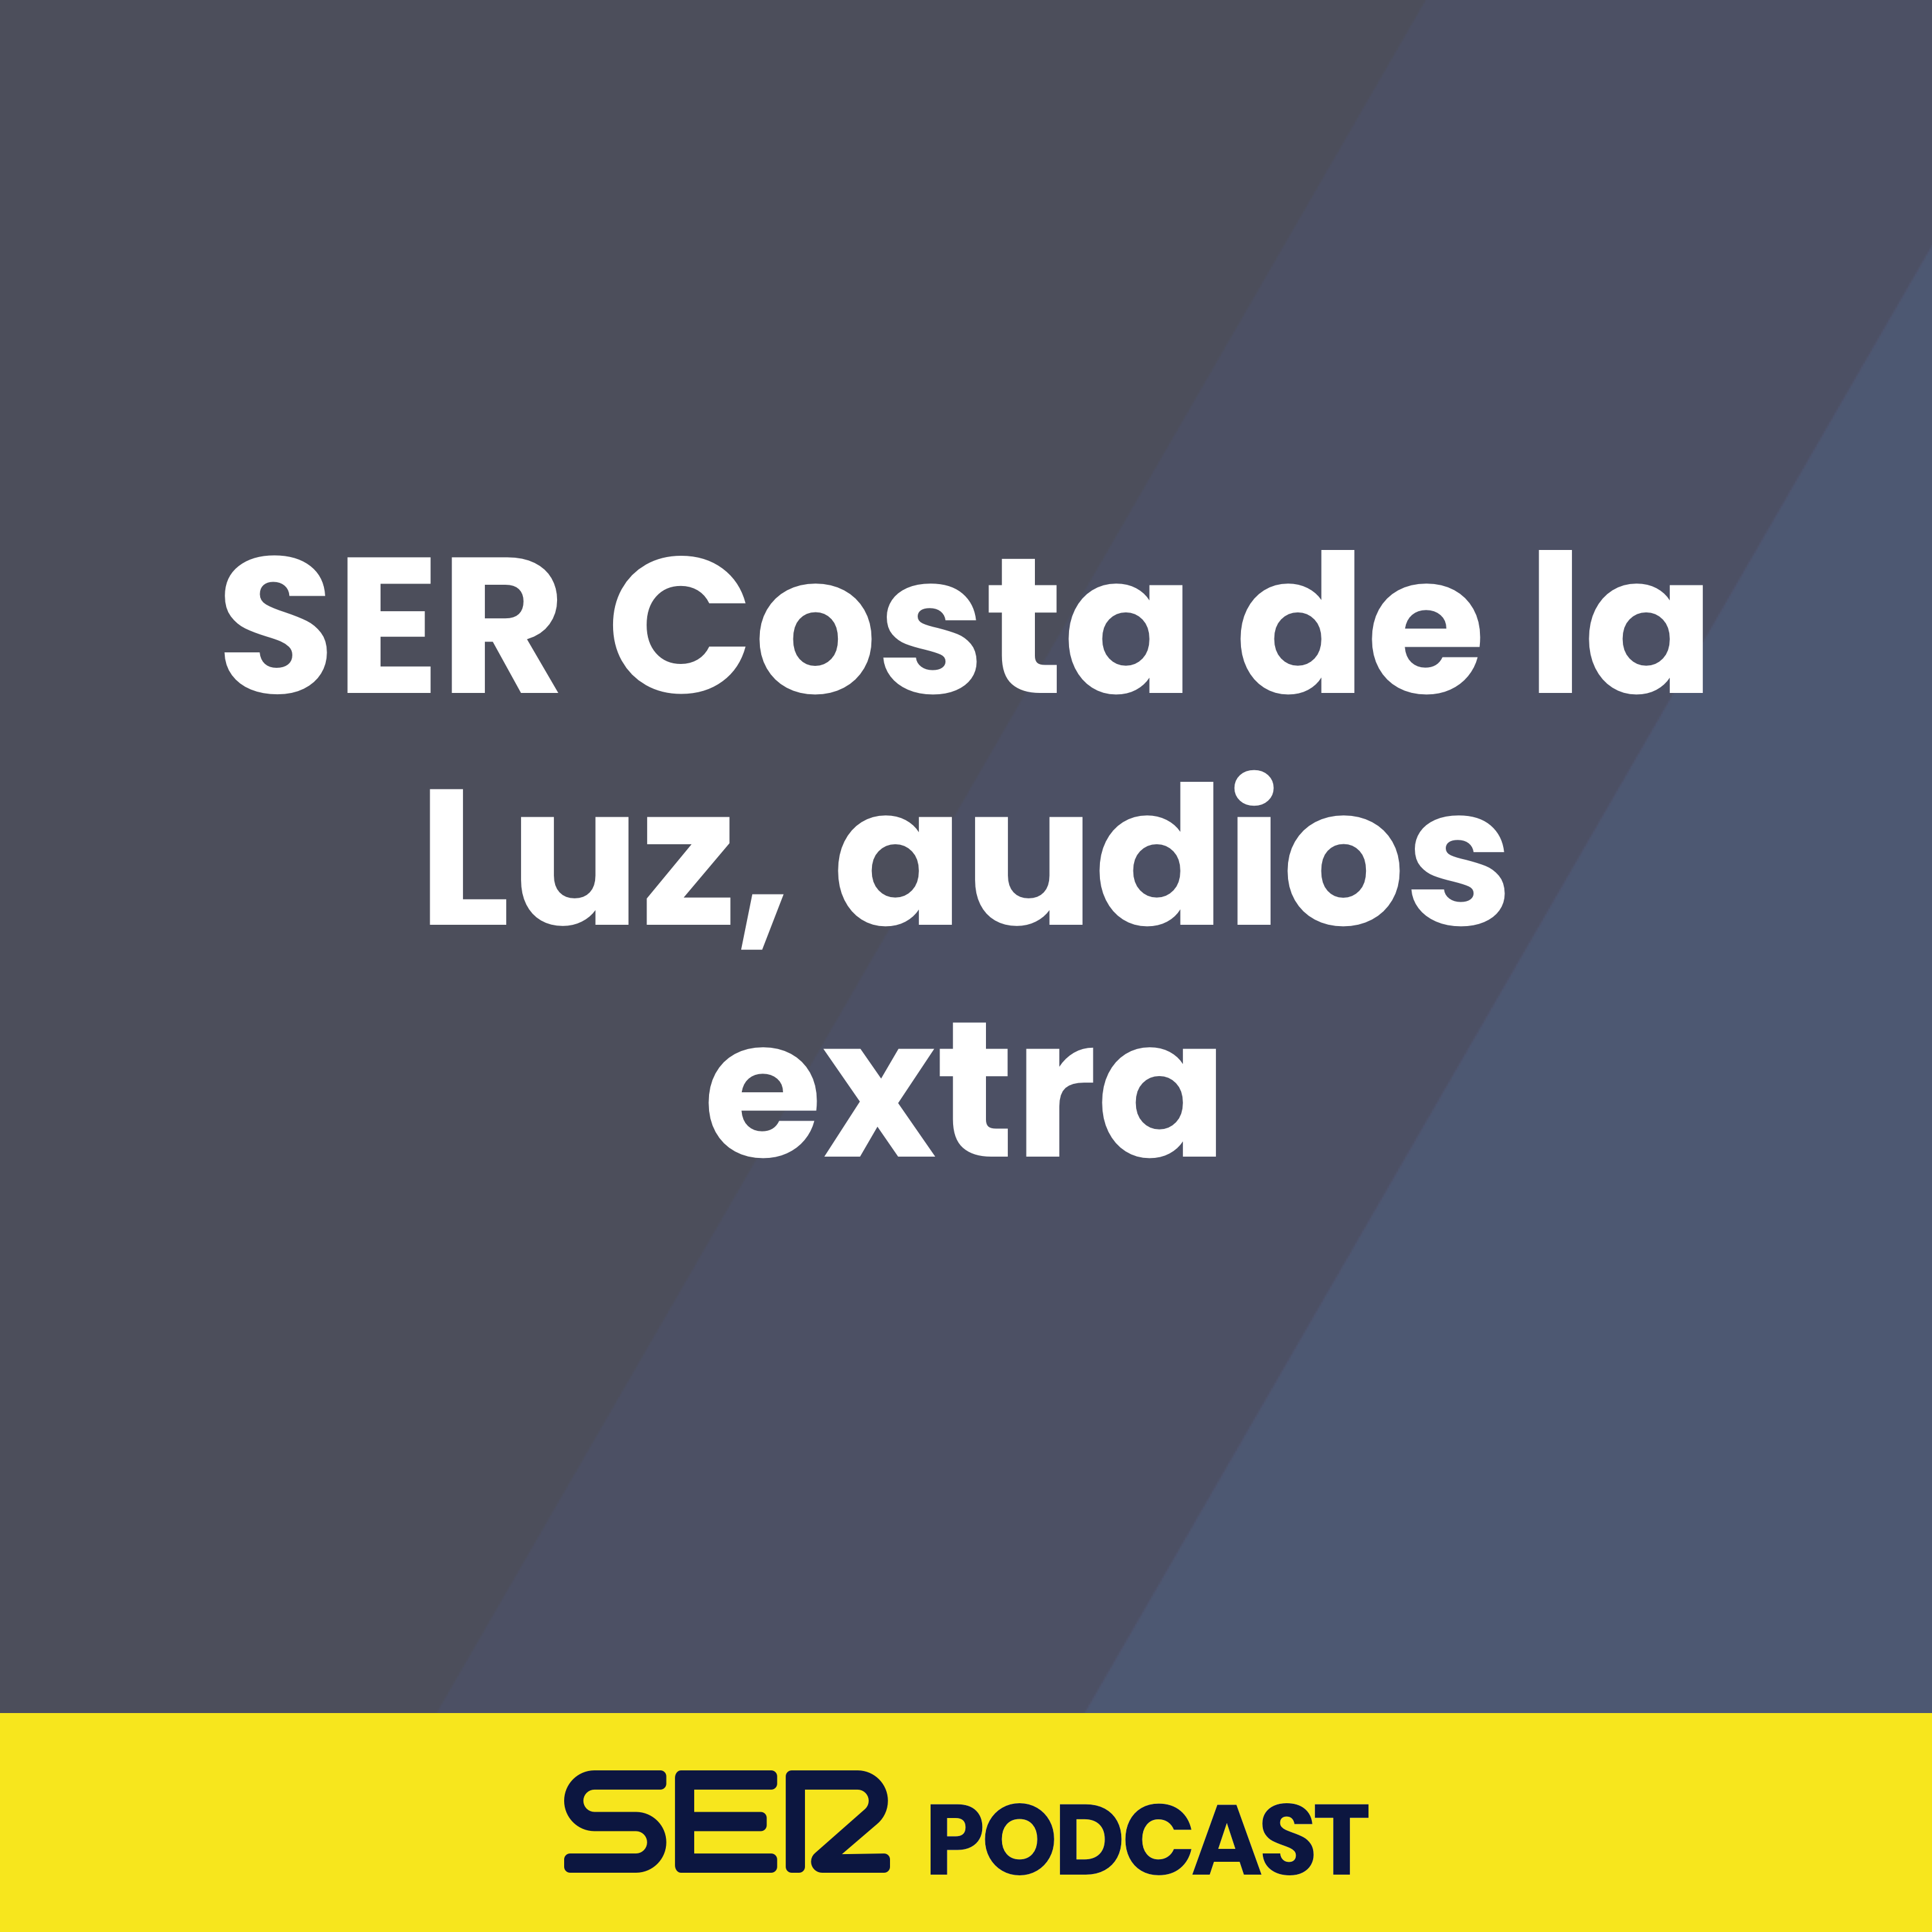 SER Costa de la Luz, audios extra